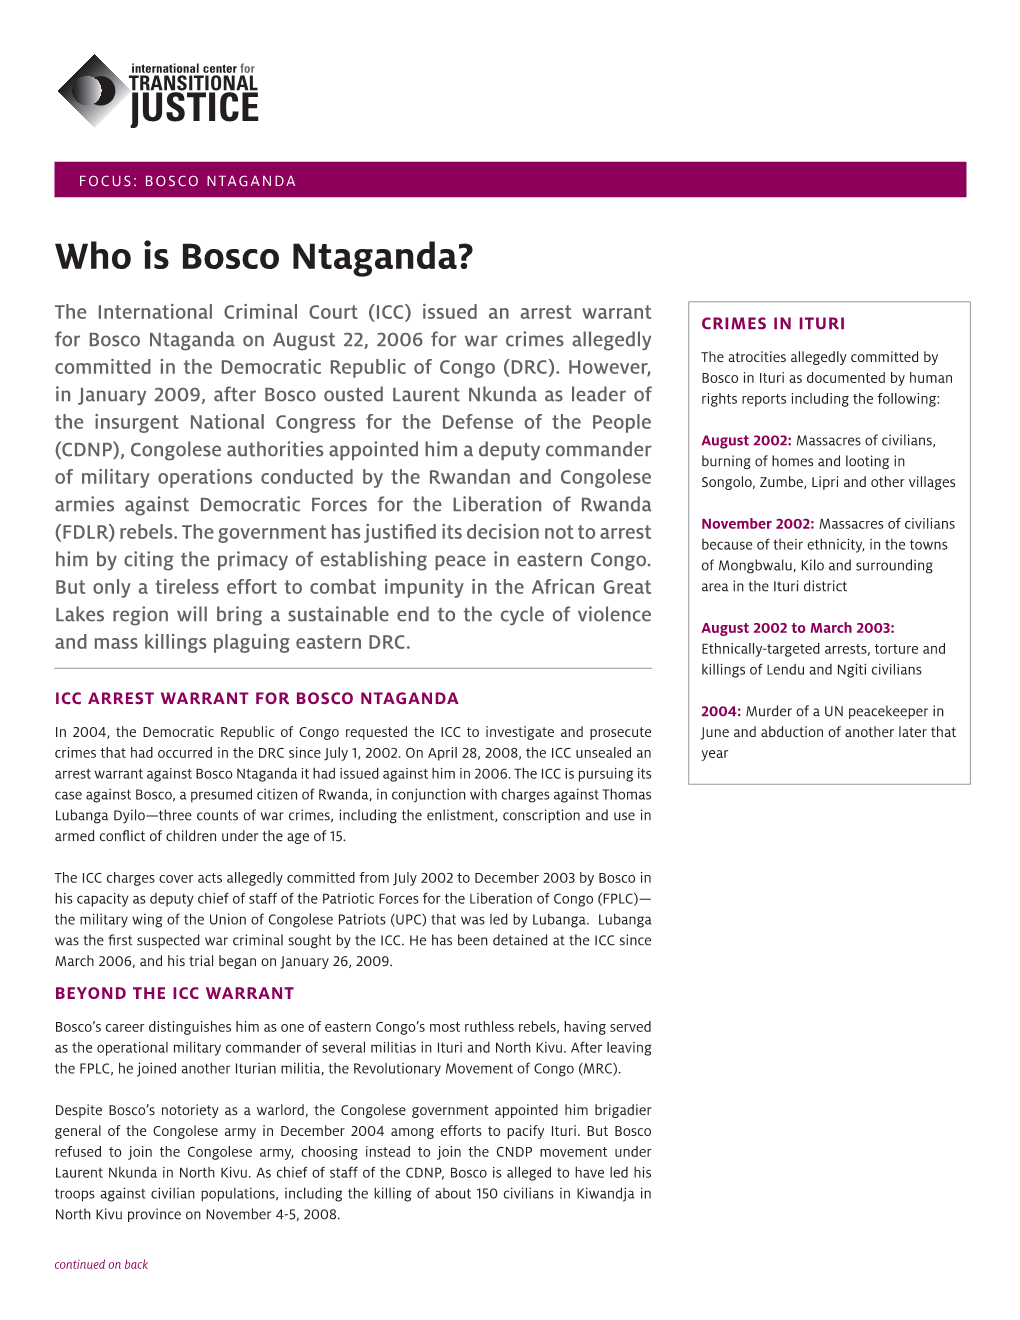 Who Is Bosco Ntaganda?